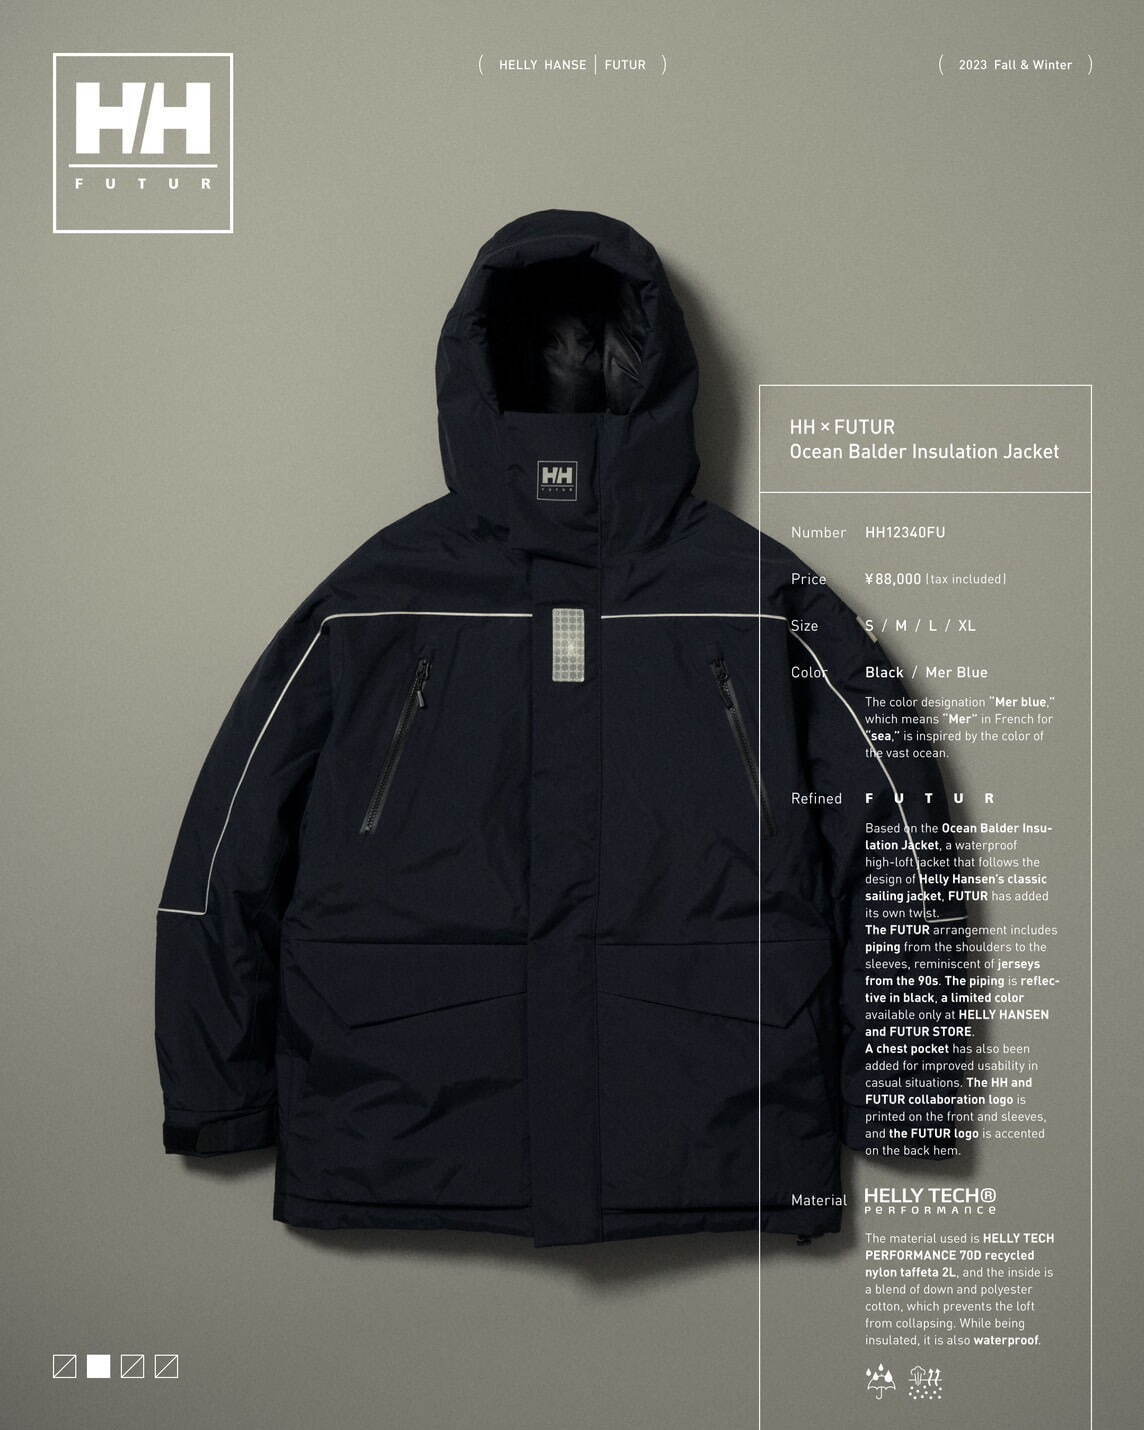 ヘリーハンセン×フューチャー オーシャンバルドールインサレーションジャケット
 (HH×FUTUR Ocean Balder Insulation Jacket) 88,000円 ブラック